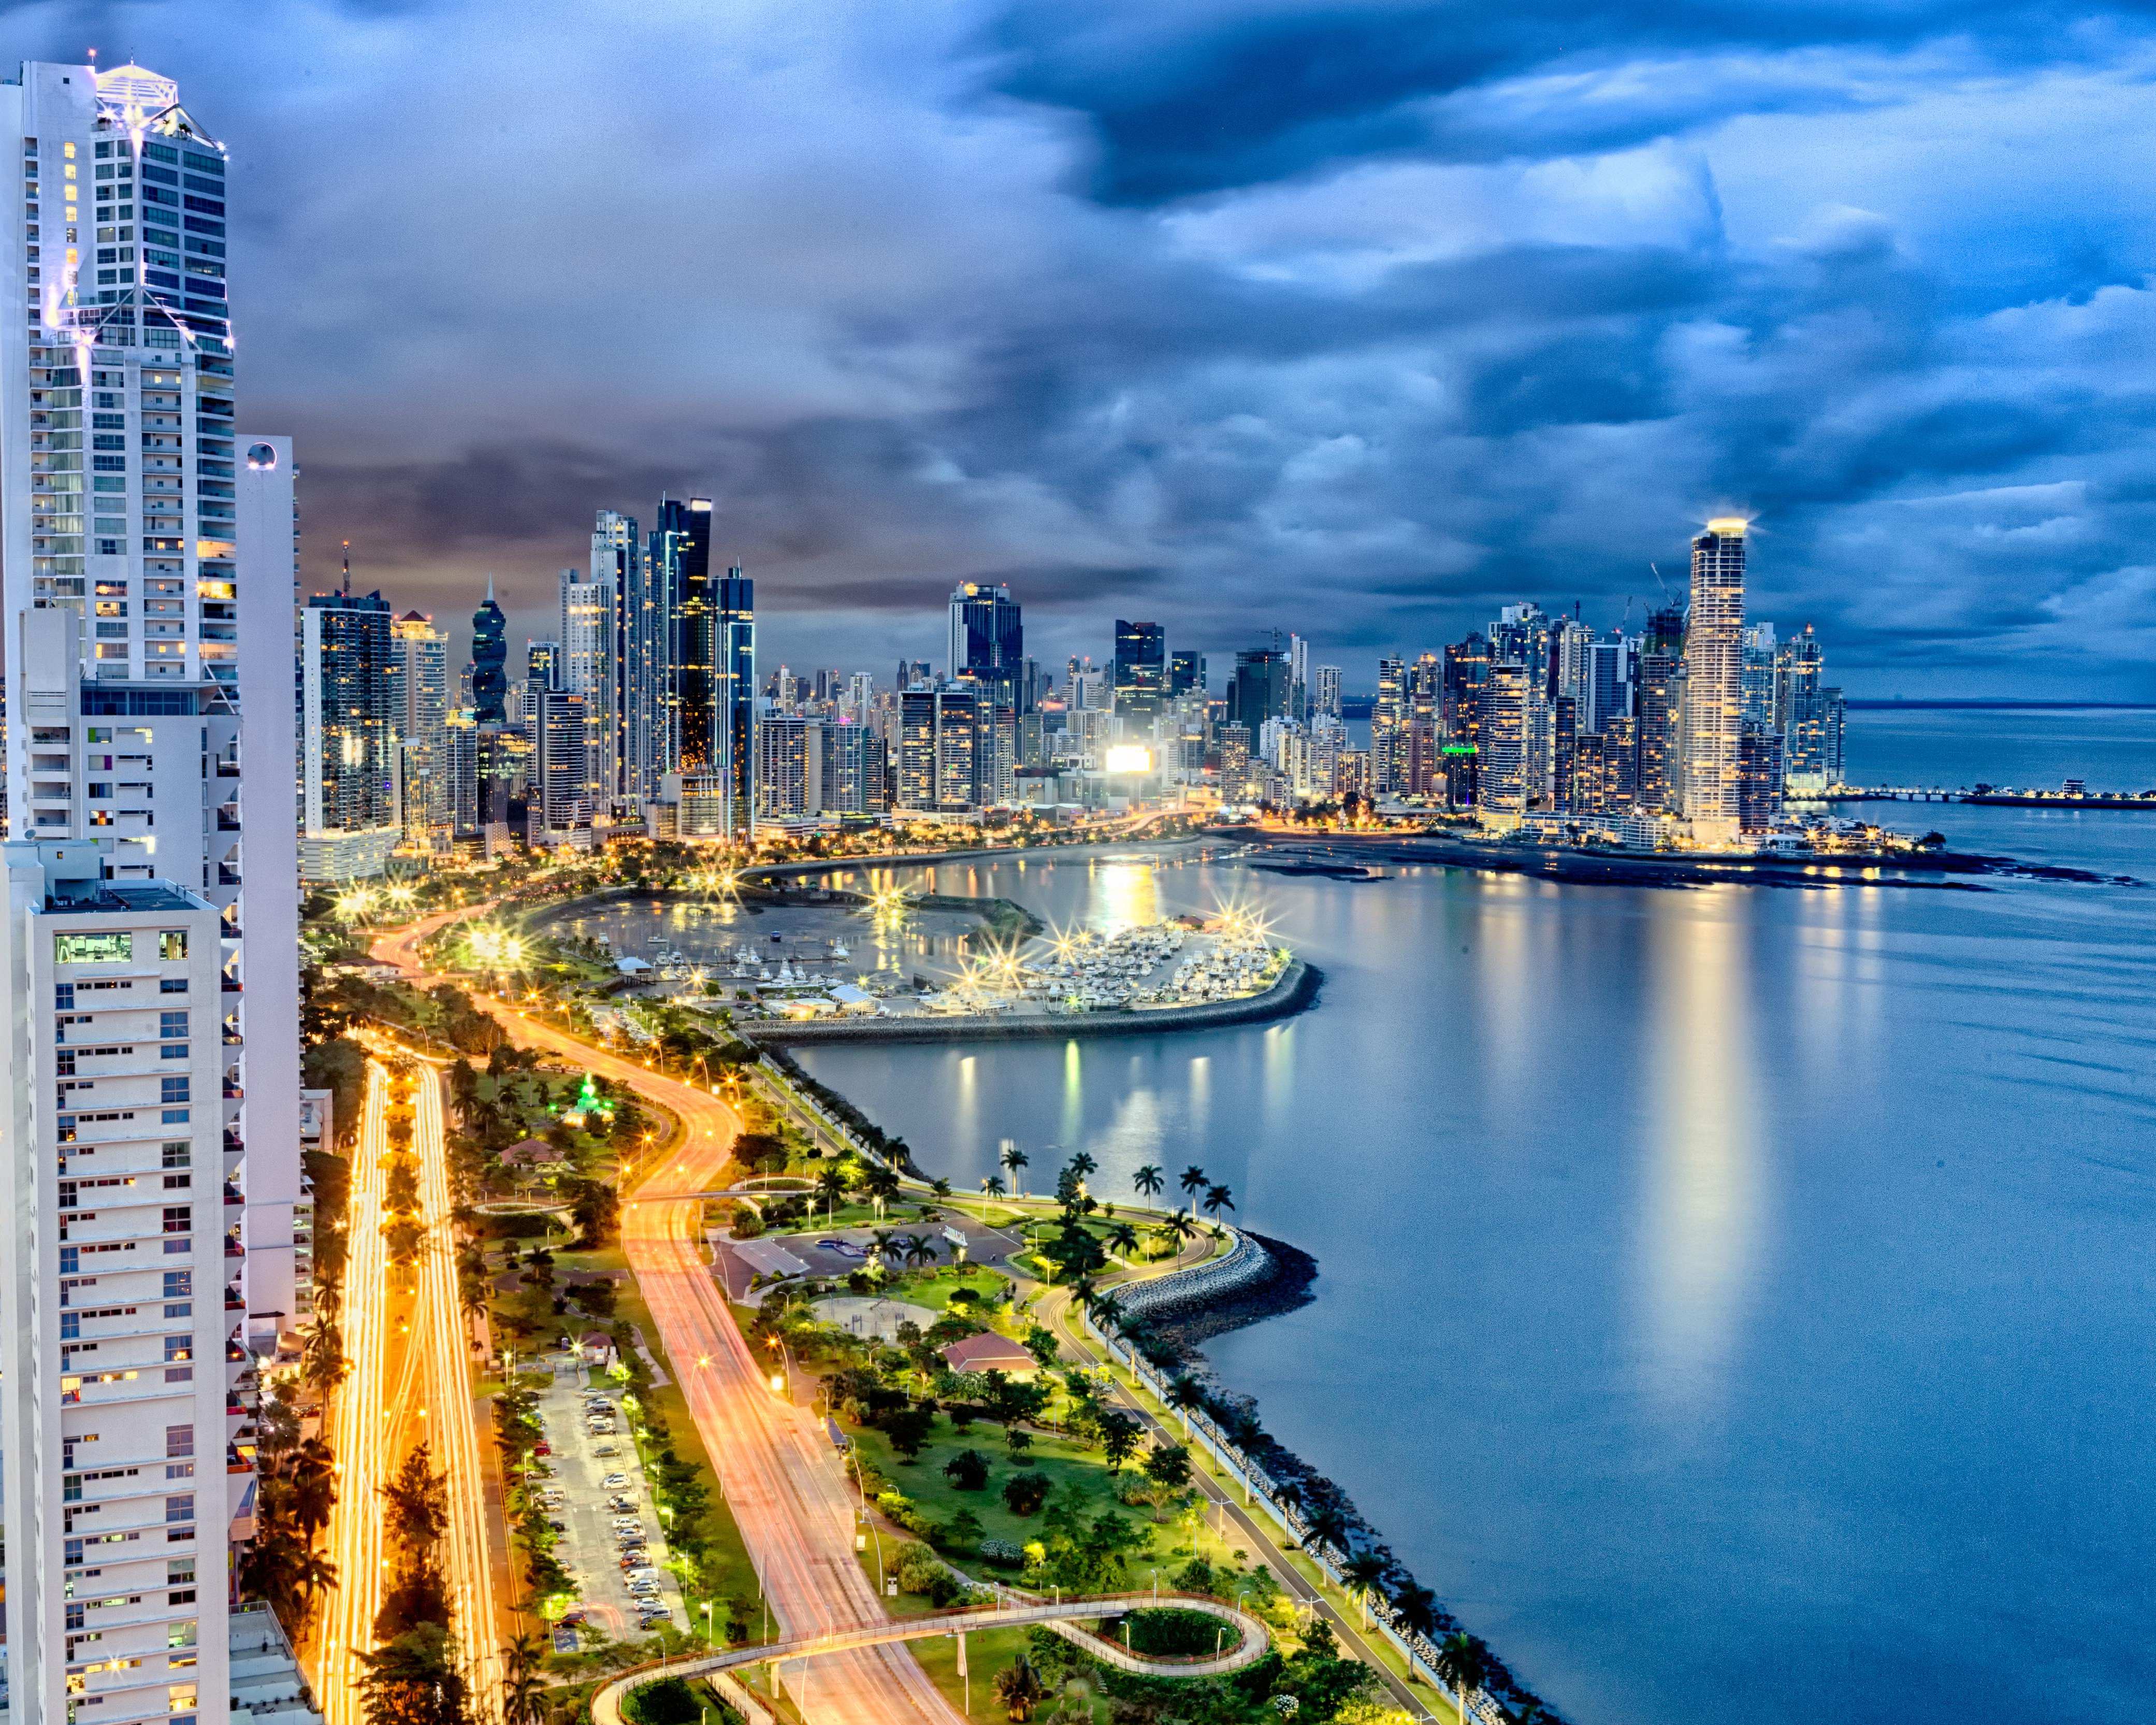 Panama-Stadt